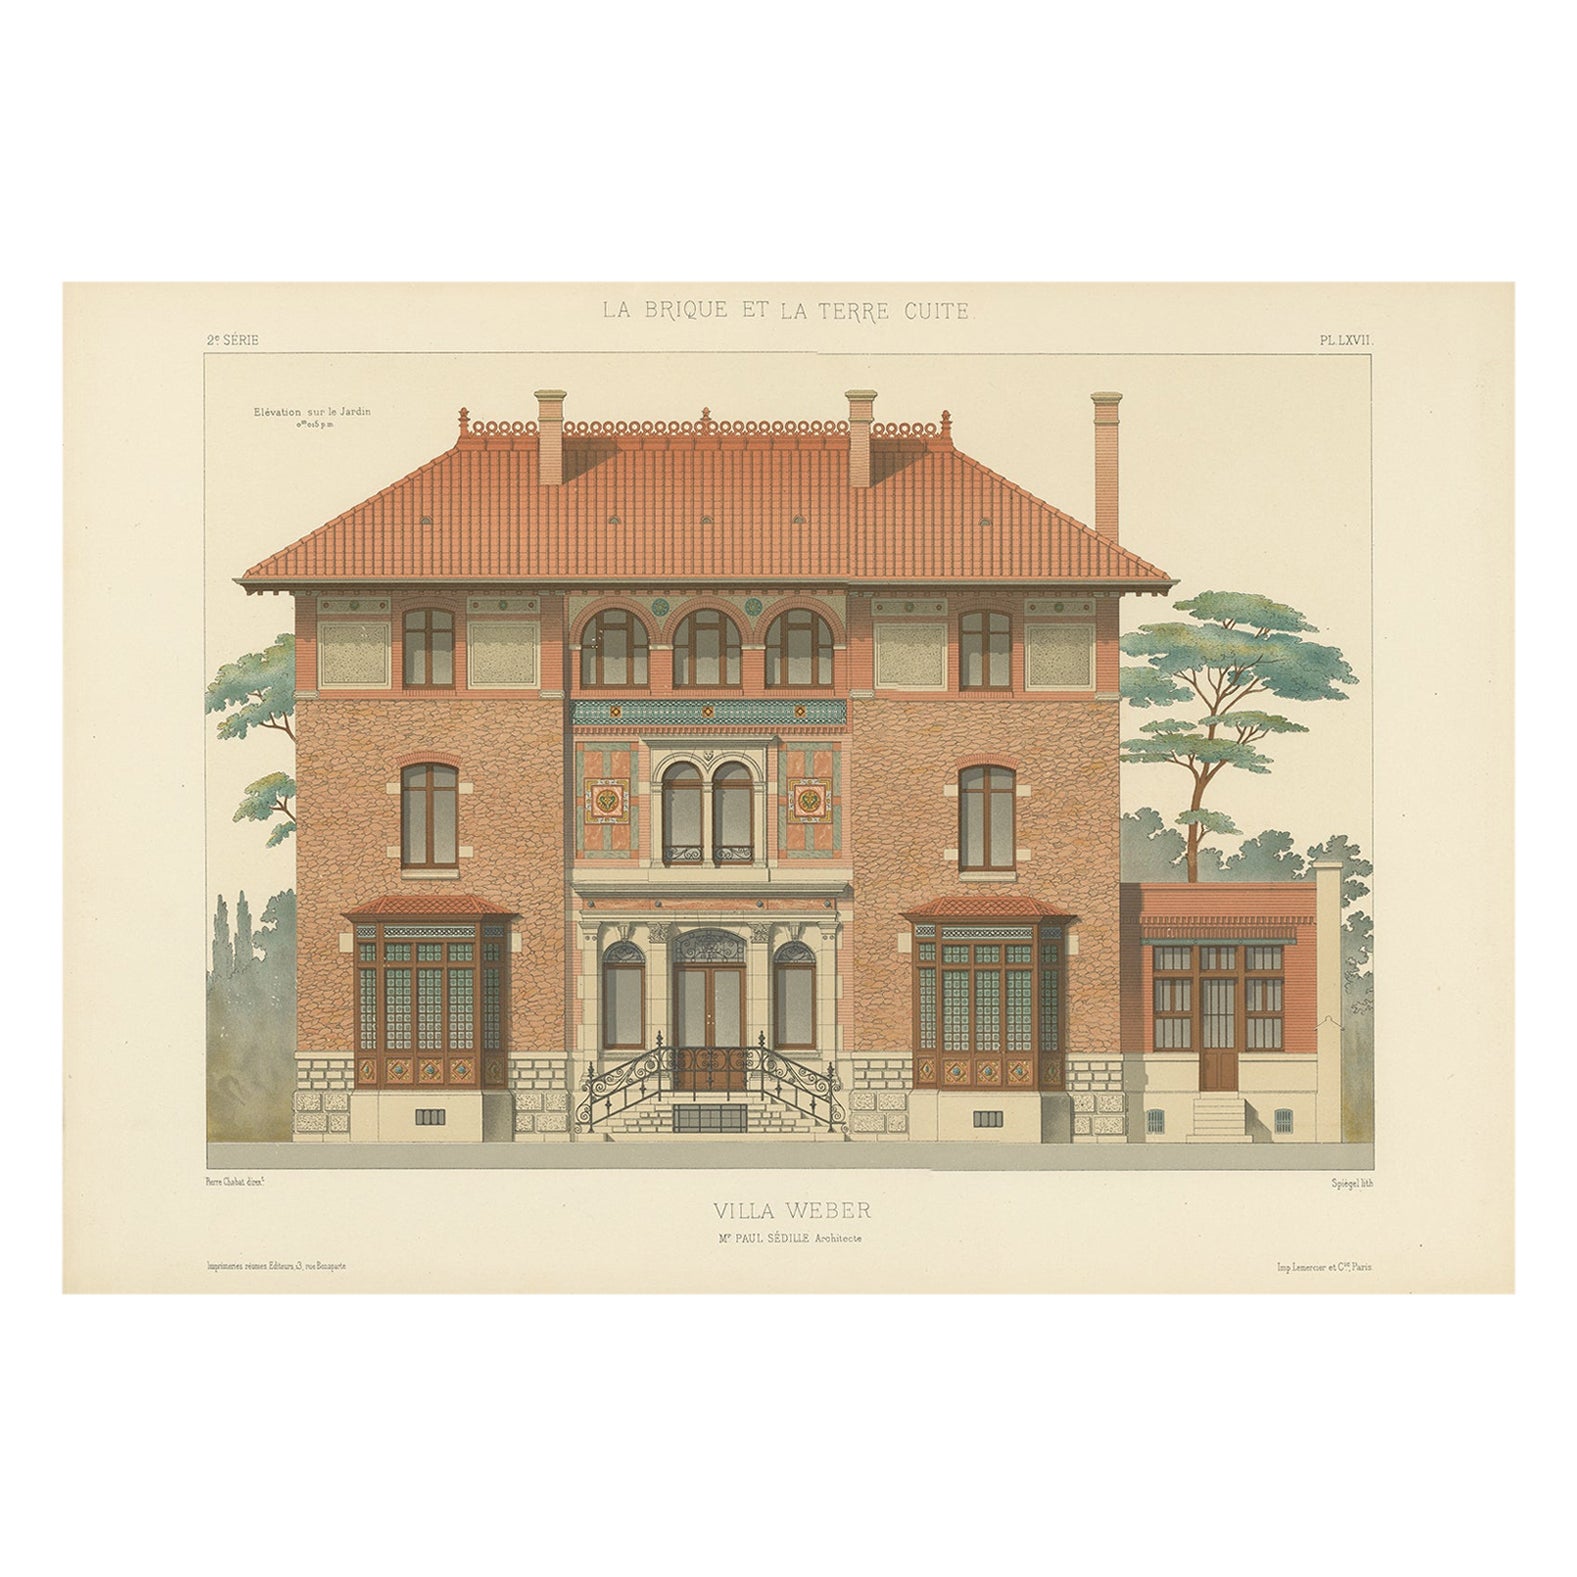 Architektonischer Druck der französischen Villa Weber, Chabat, um 1900